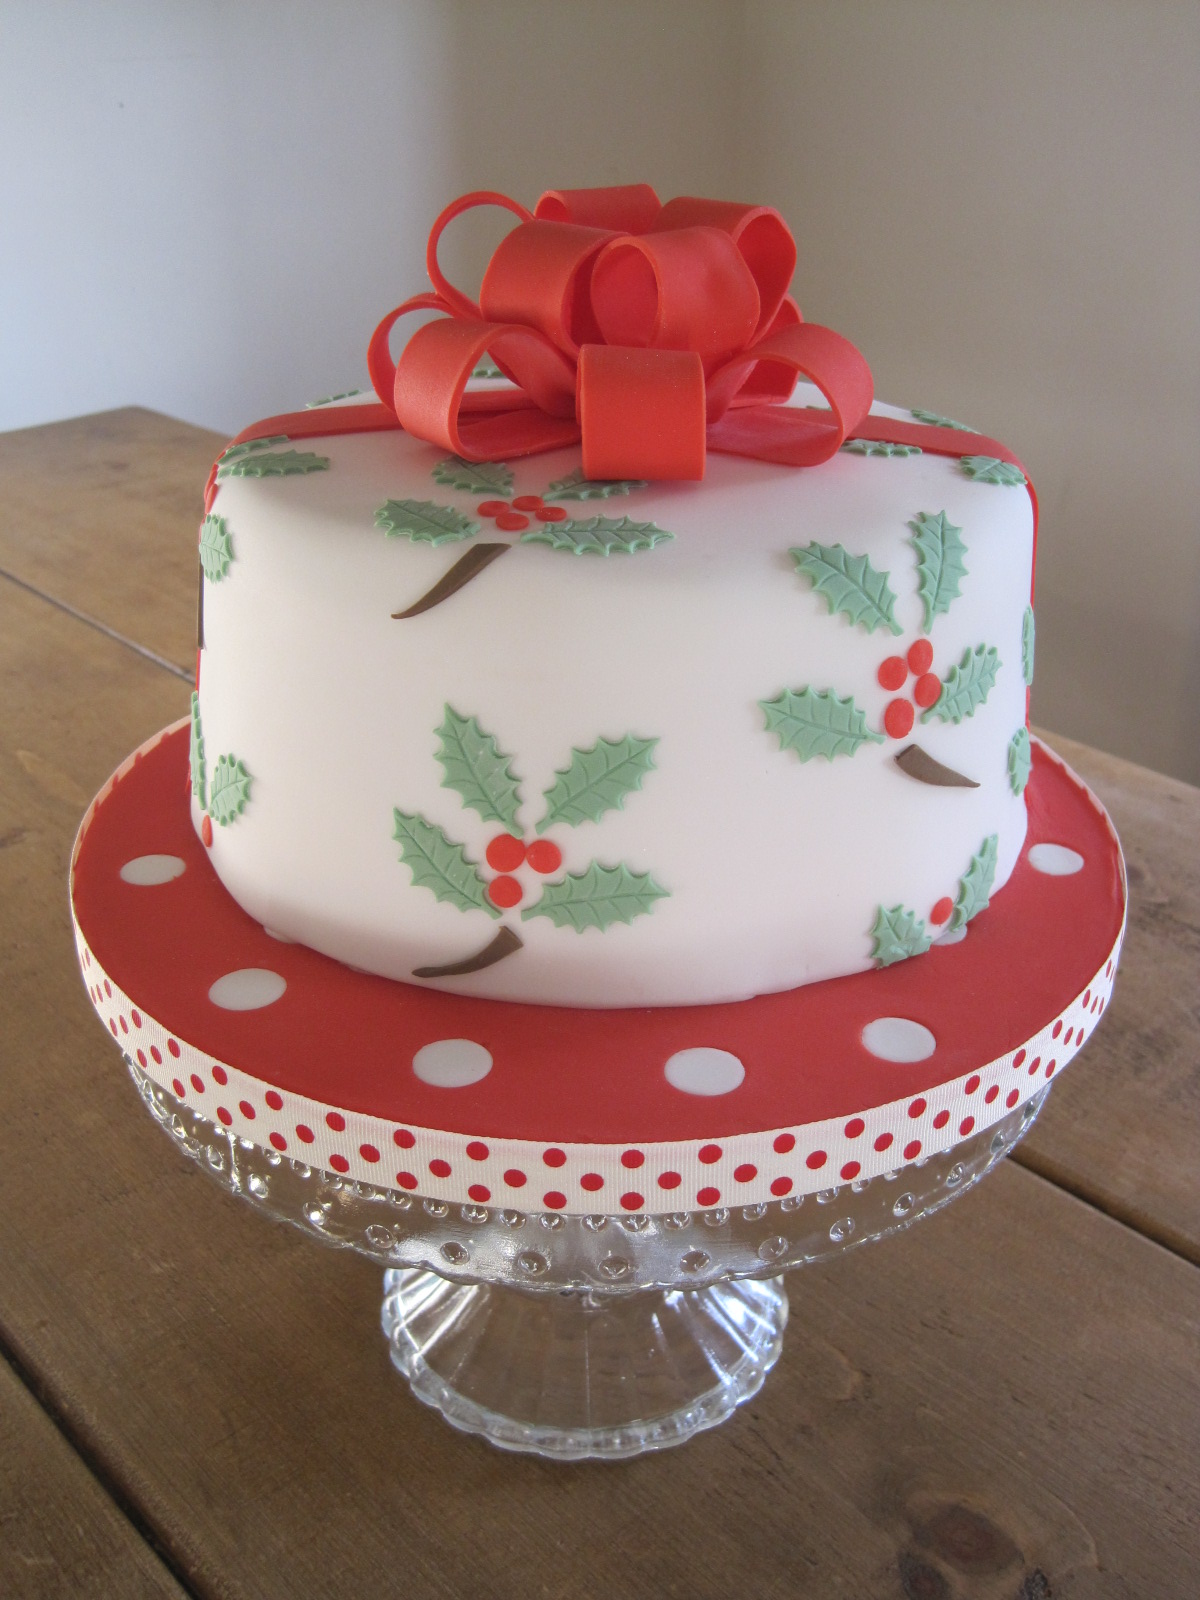 Cake Crush: My 2012 Christmas cake